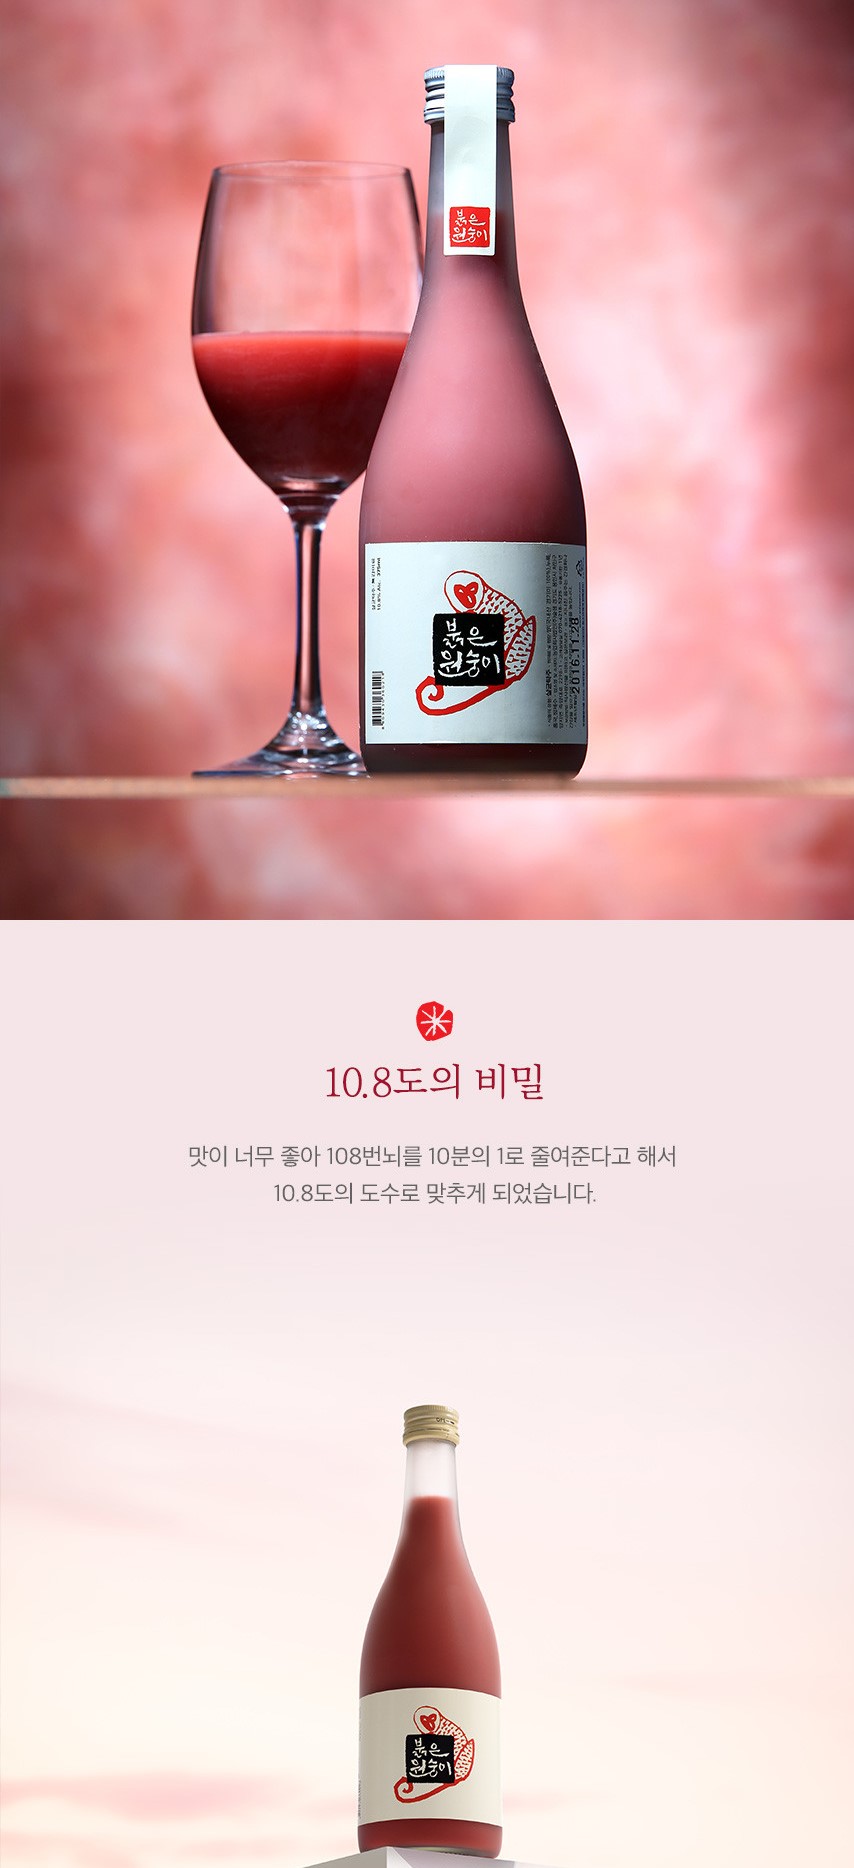 韓國食品-[Sulseam] Red Monkey Rice Wine 375ml